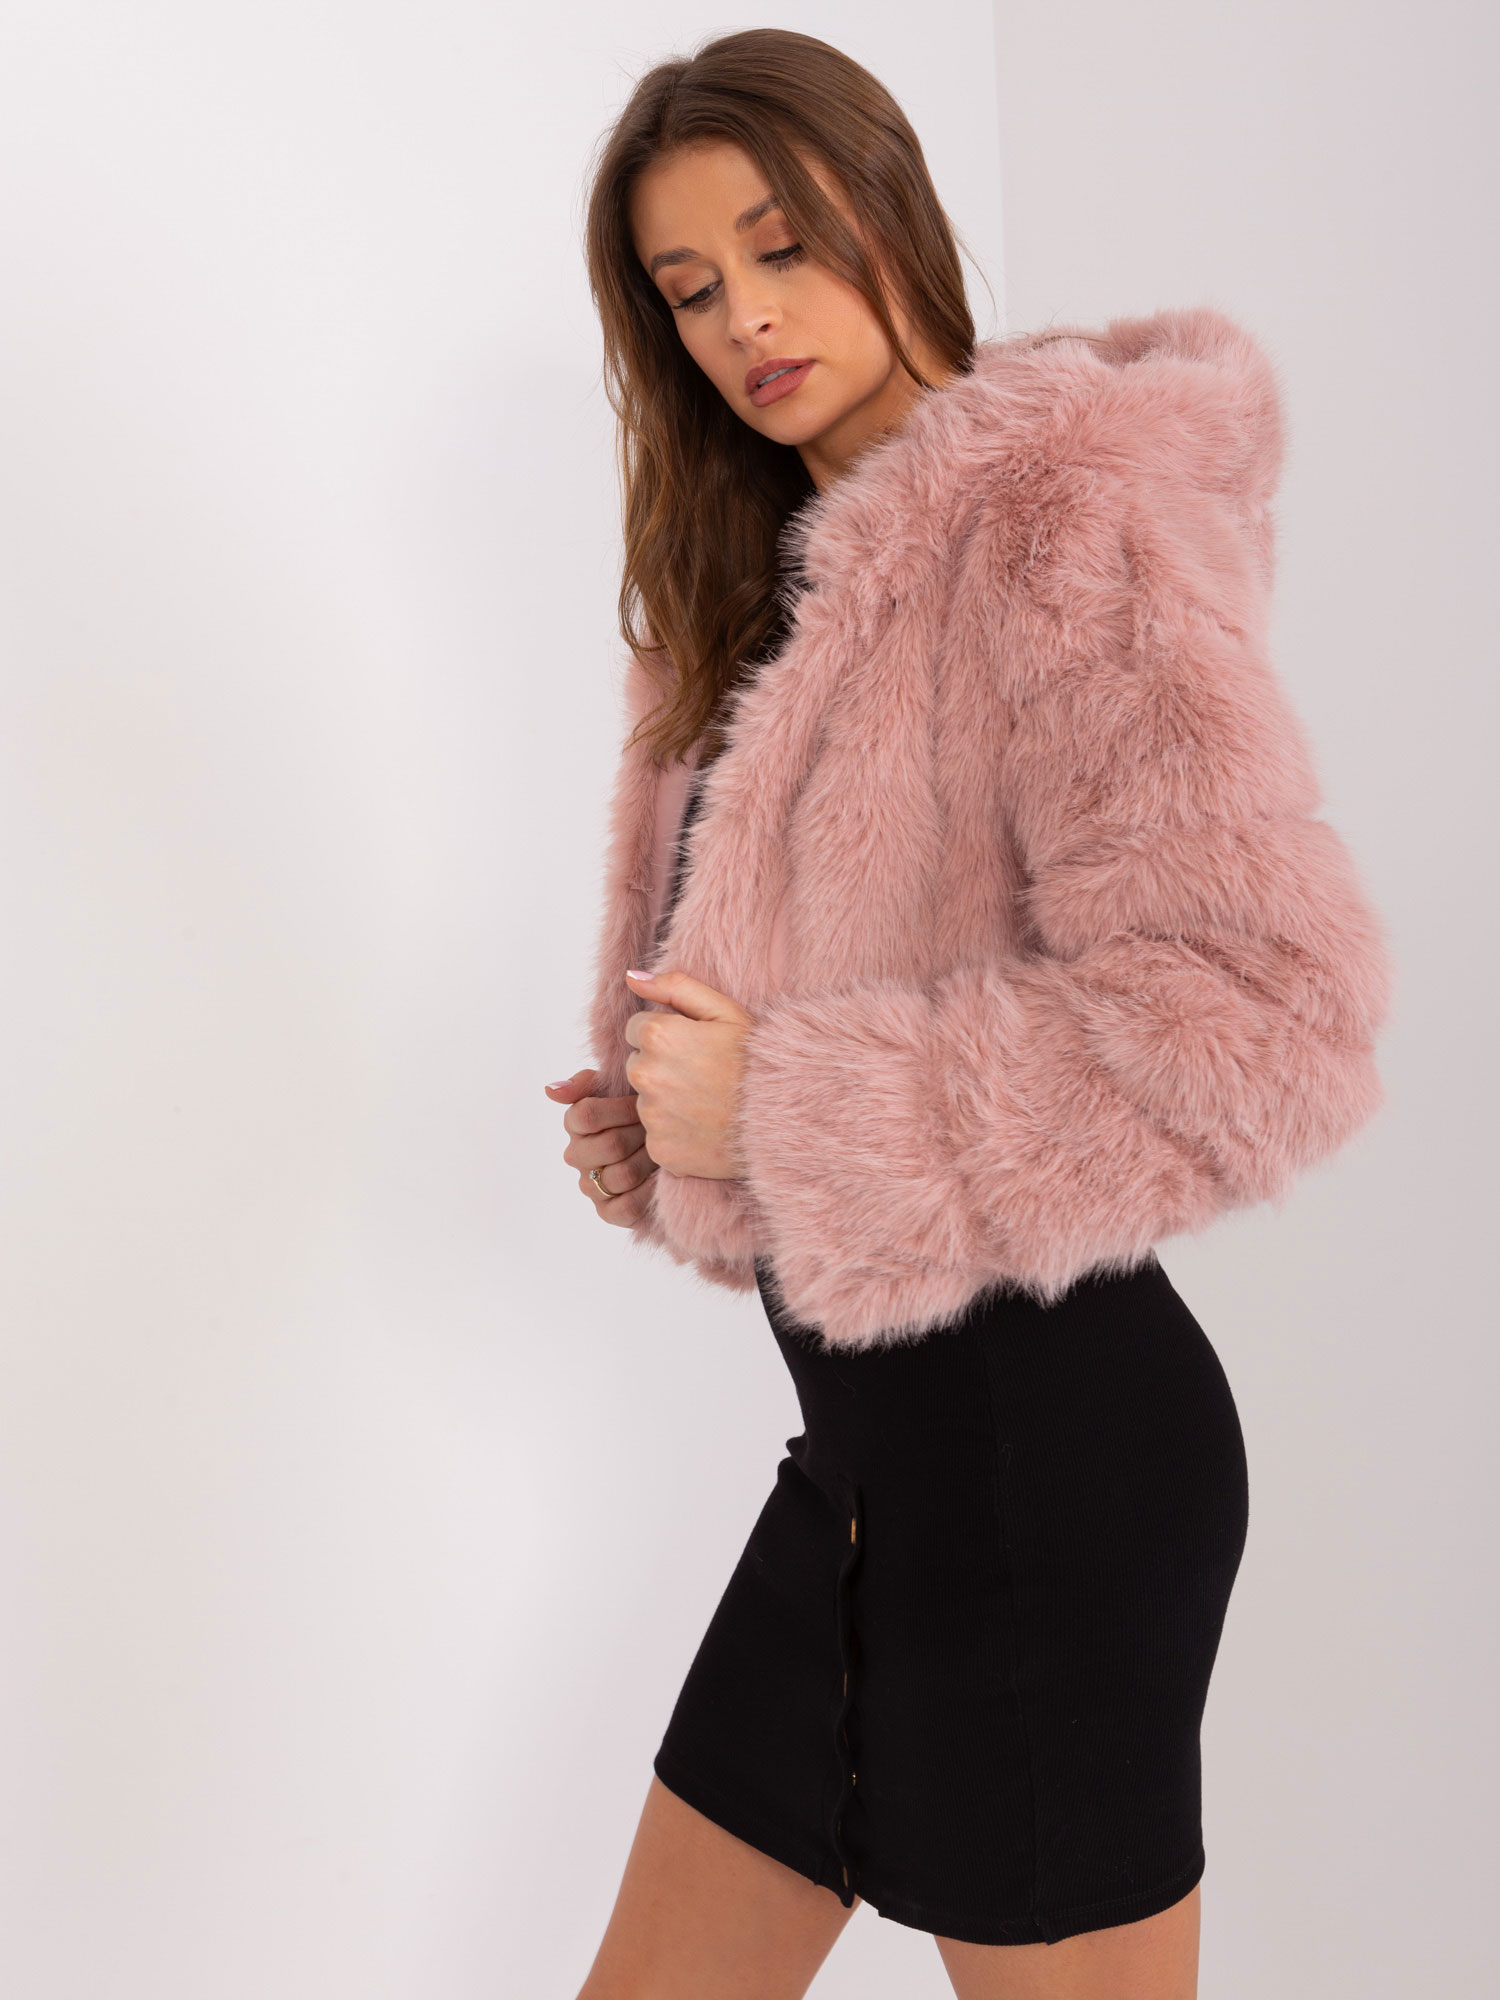 Light Pink Short Women's Fur Jacket